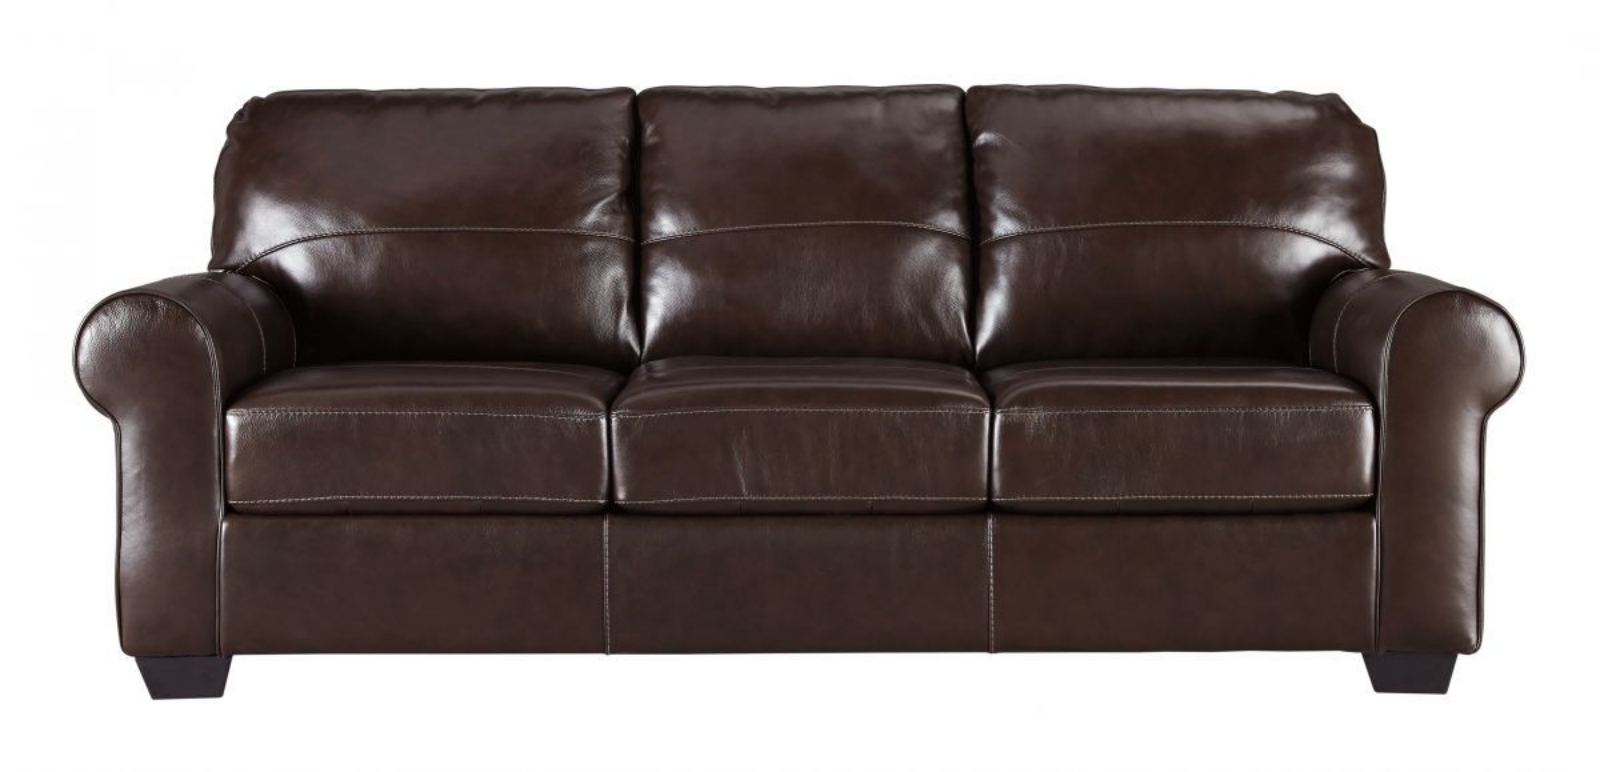 Picture of Canterelli Sofa